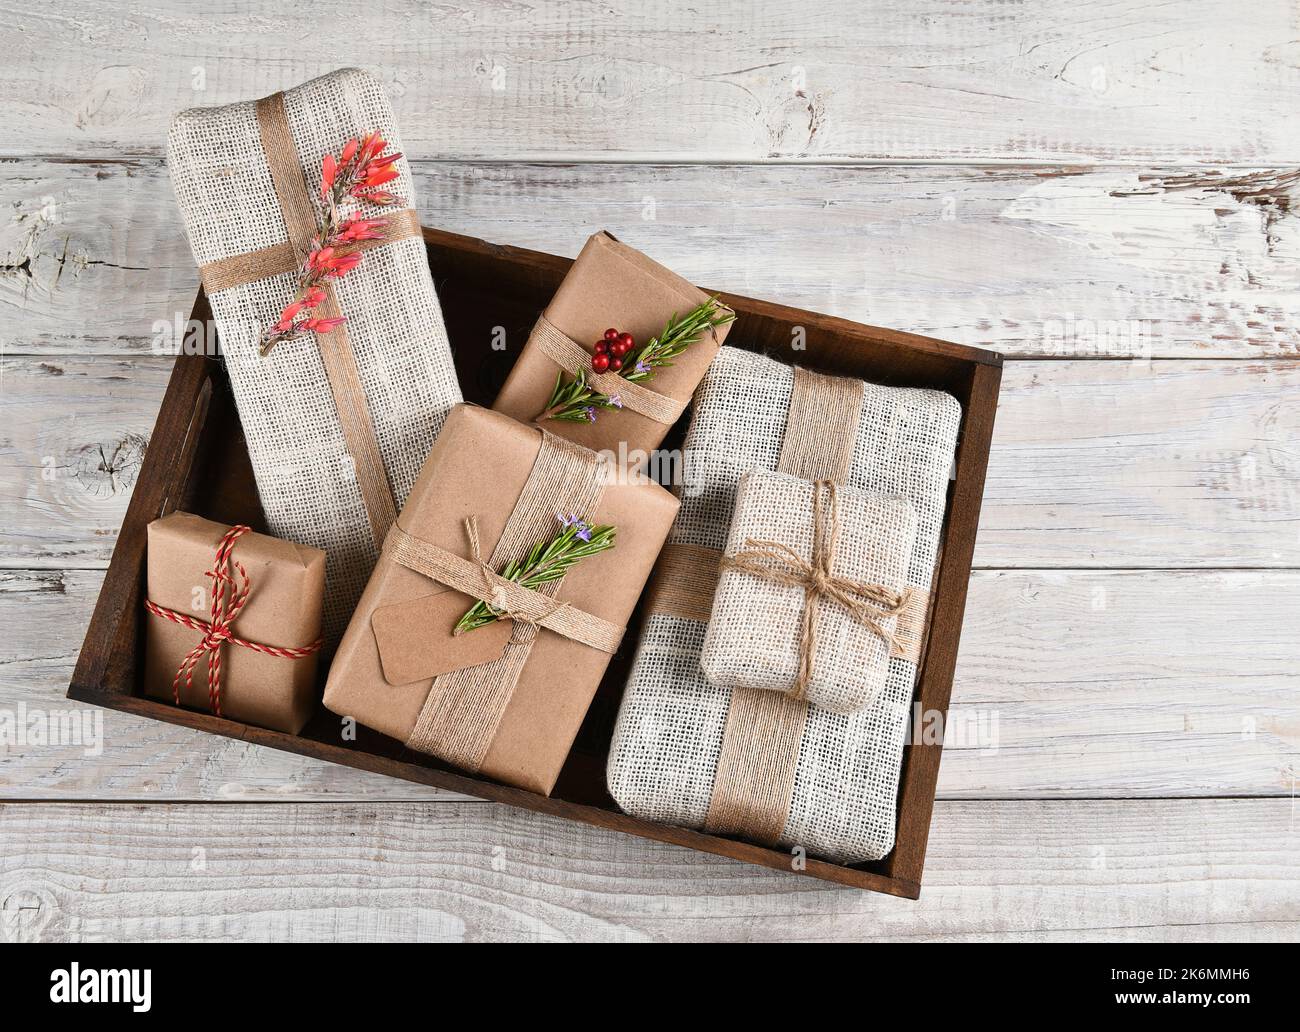 Weihnachtsgeschenke. In einer Holzkiste verpackte Geschenke aus Sackleinen und braunem Papier. Stockfoto